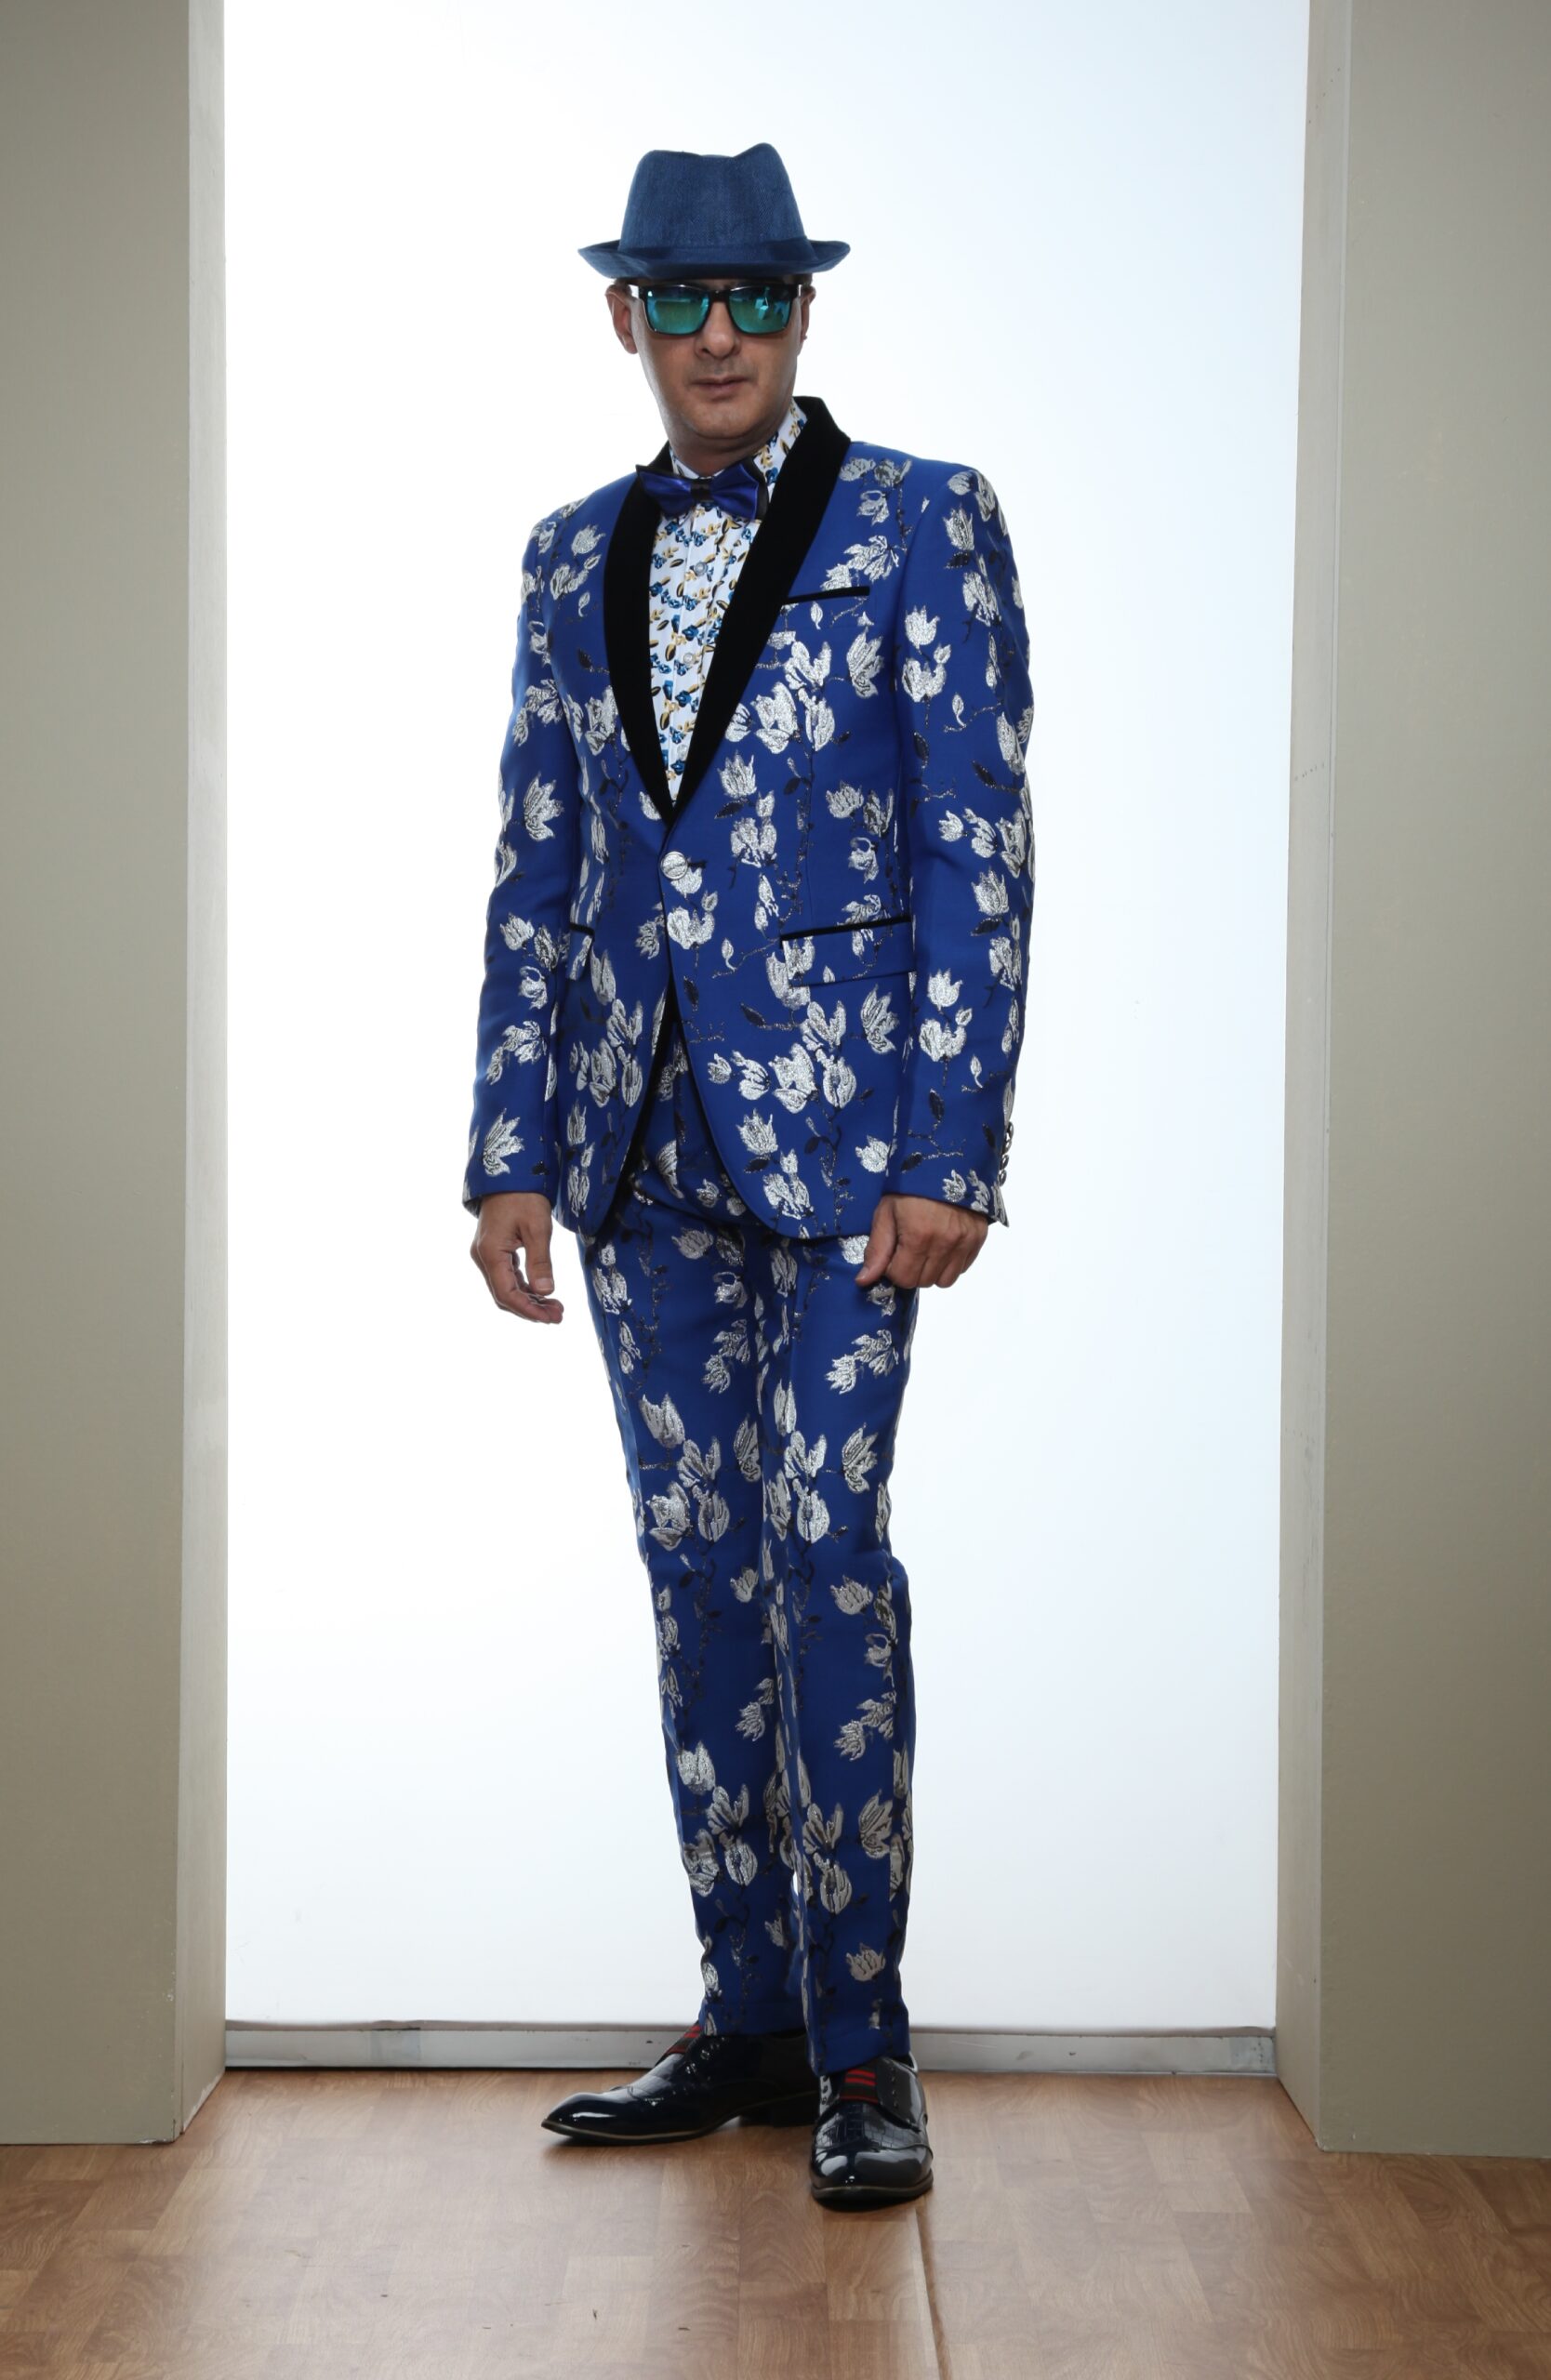 Mst 5003 03 Rent Rental Hire Tuxedo Suit Black Tie Suit Designer Suits Shop Tailor